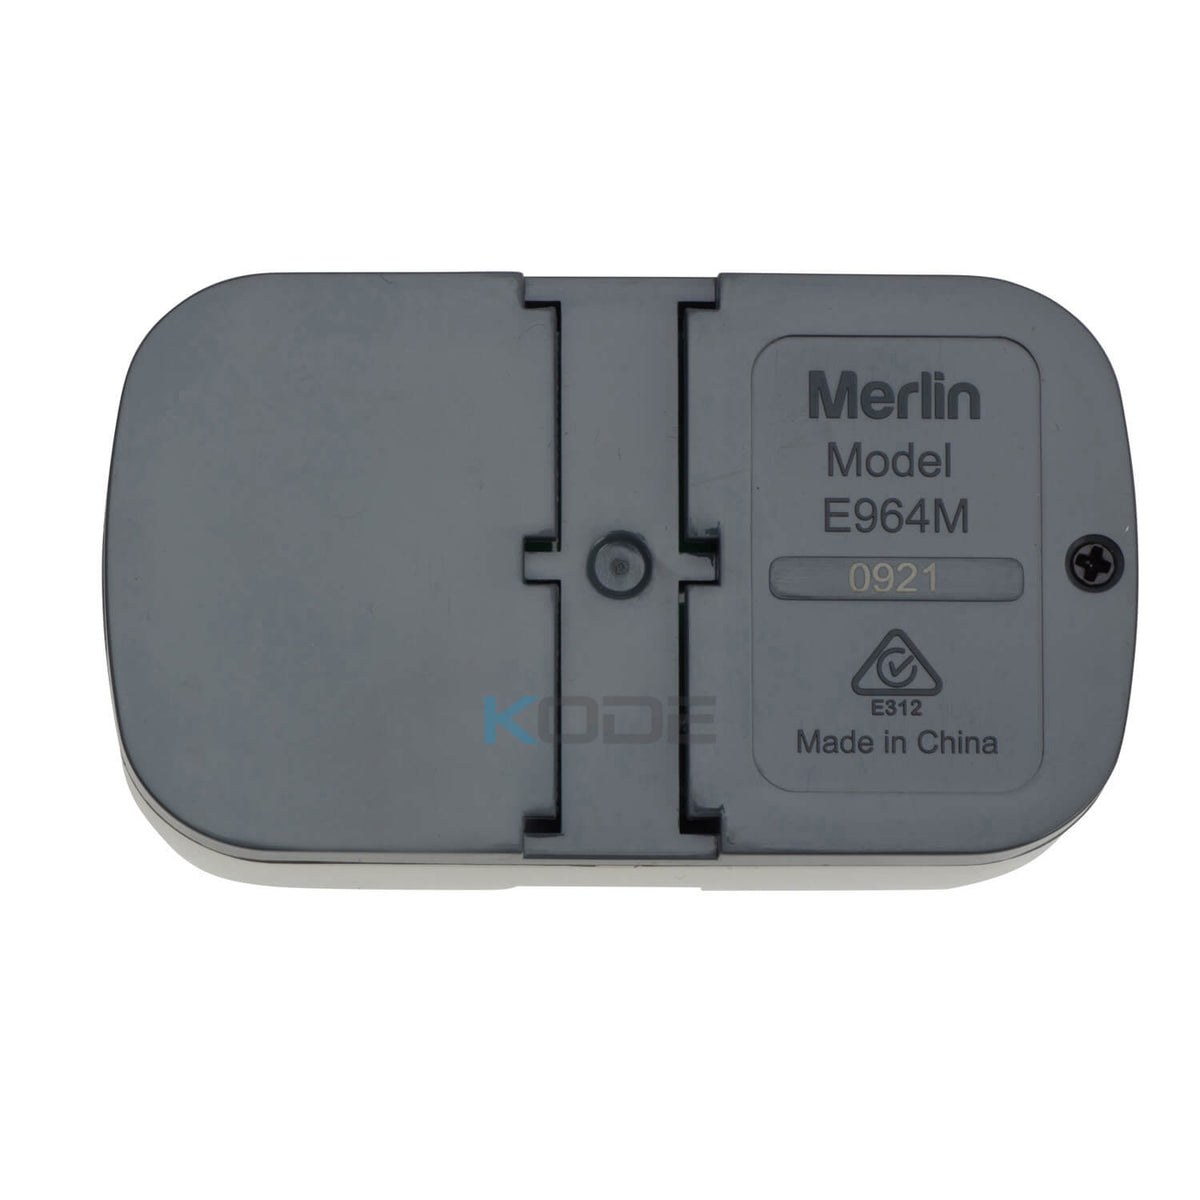 Merlin E964M Visor Remote - Back